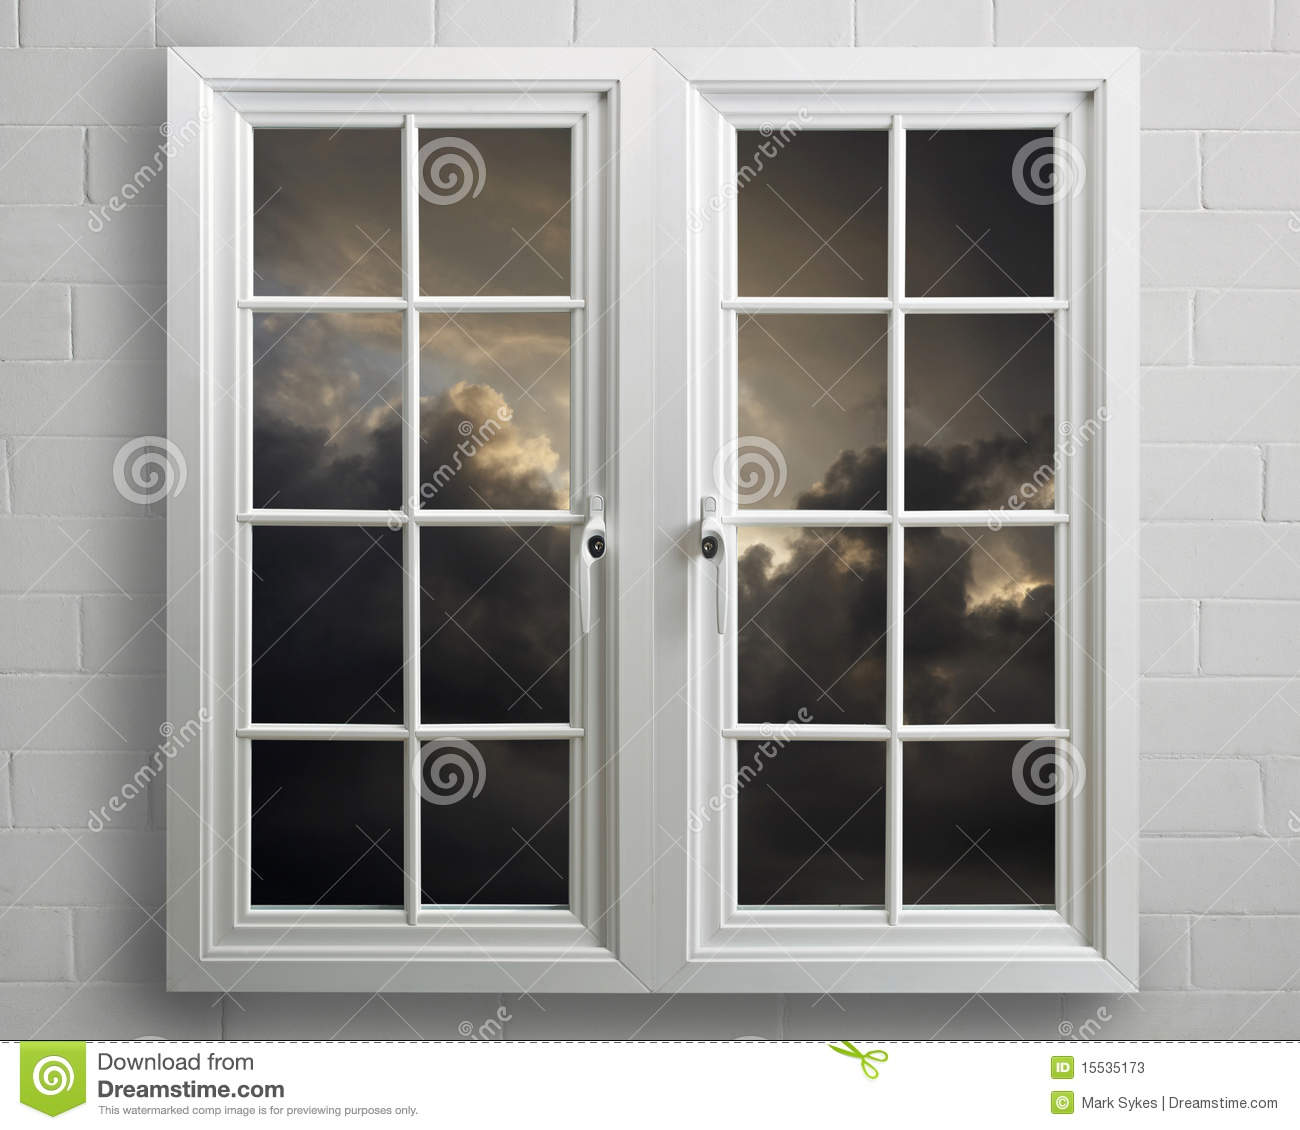 darkstorm viewer for windows 10